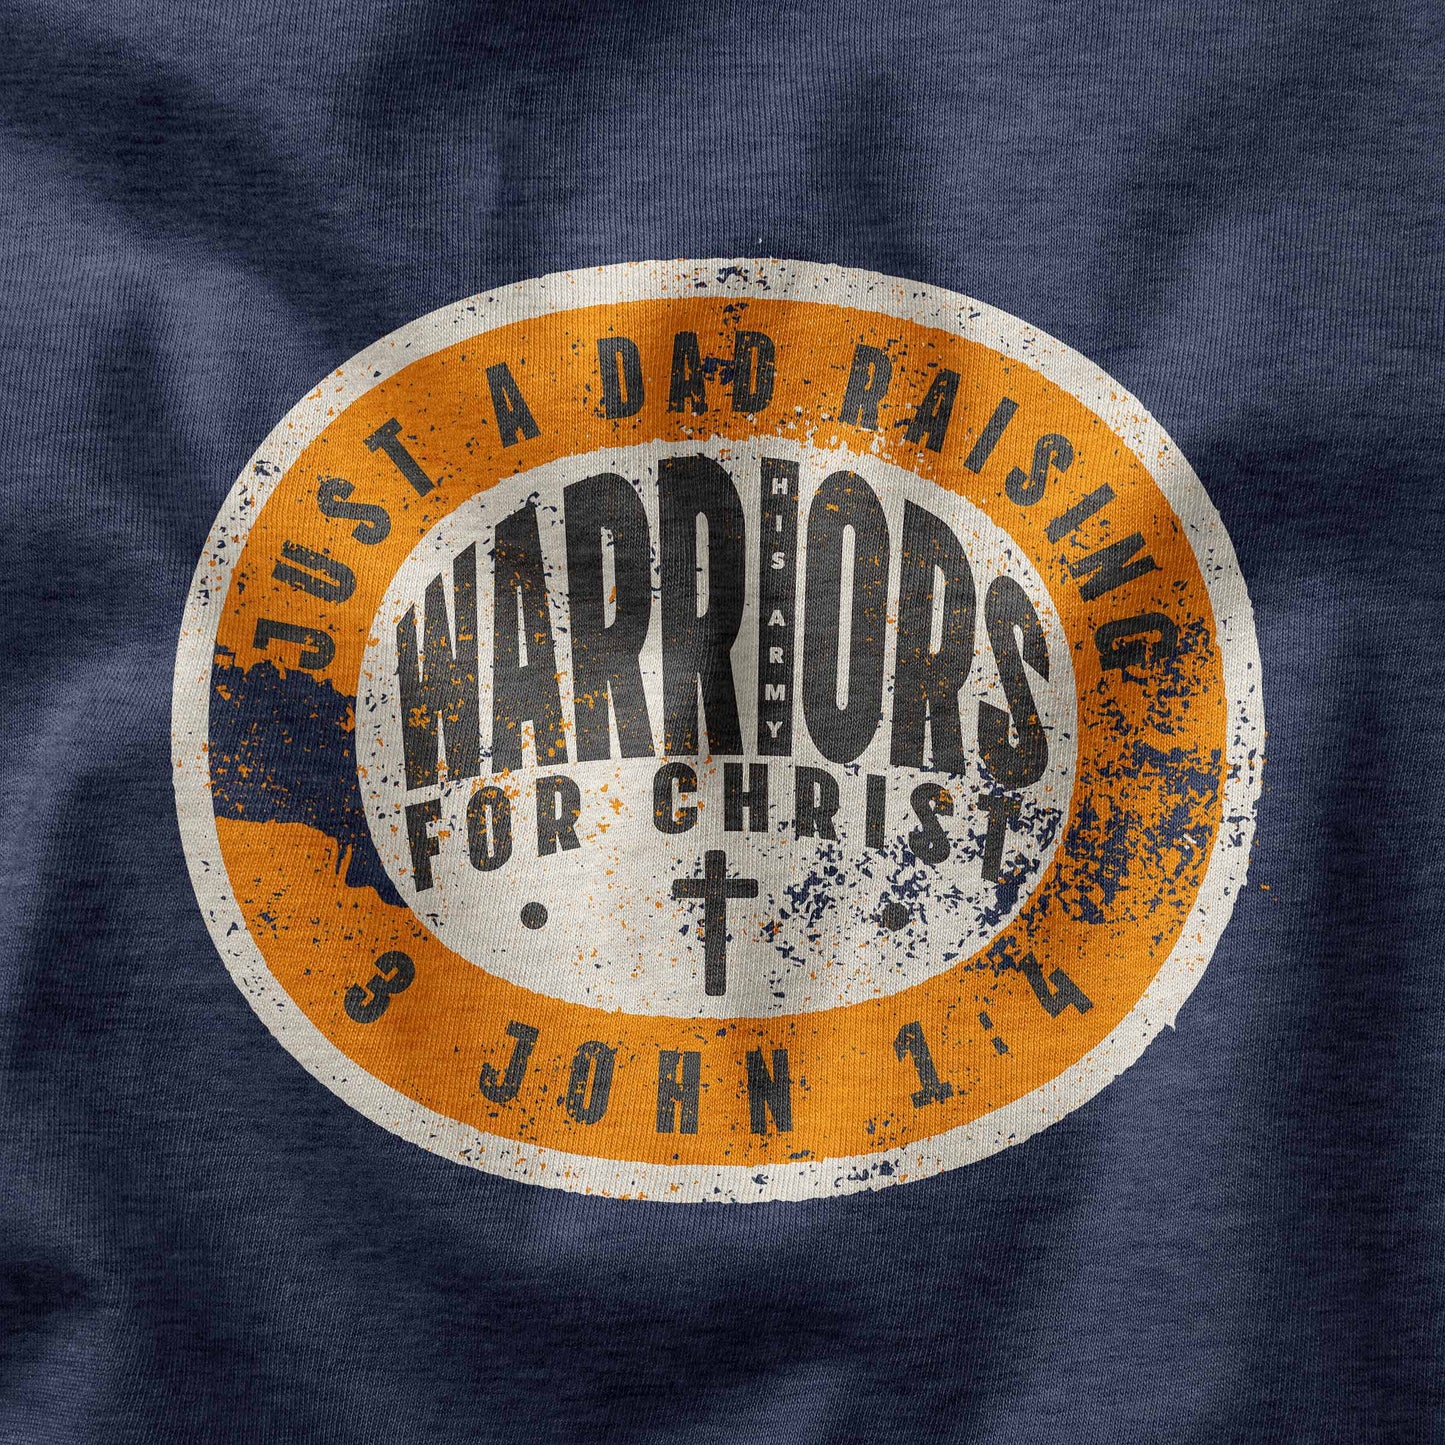 Just a Dad raising warriors for Christ t-shirt design closeup